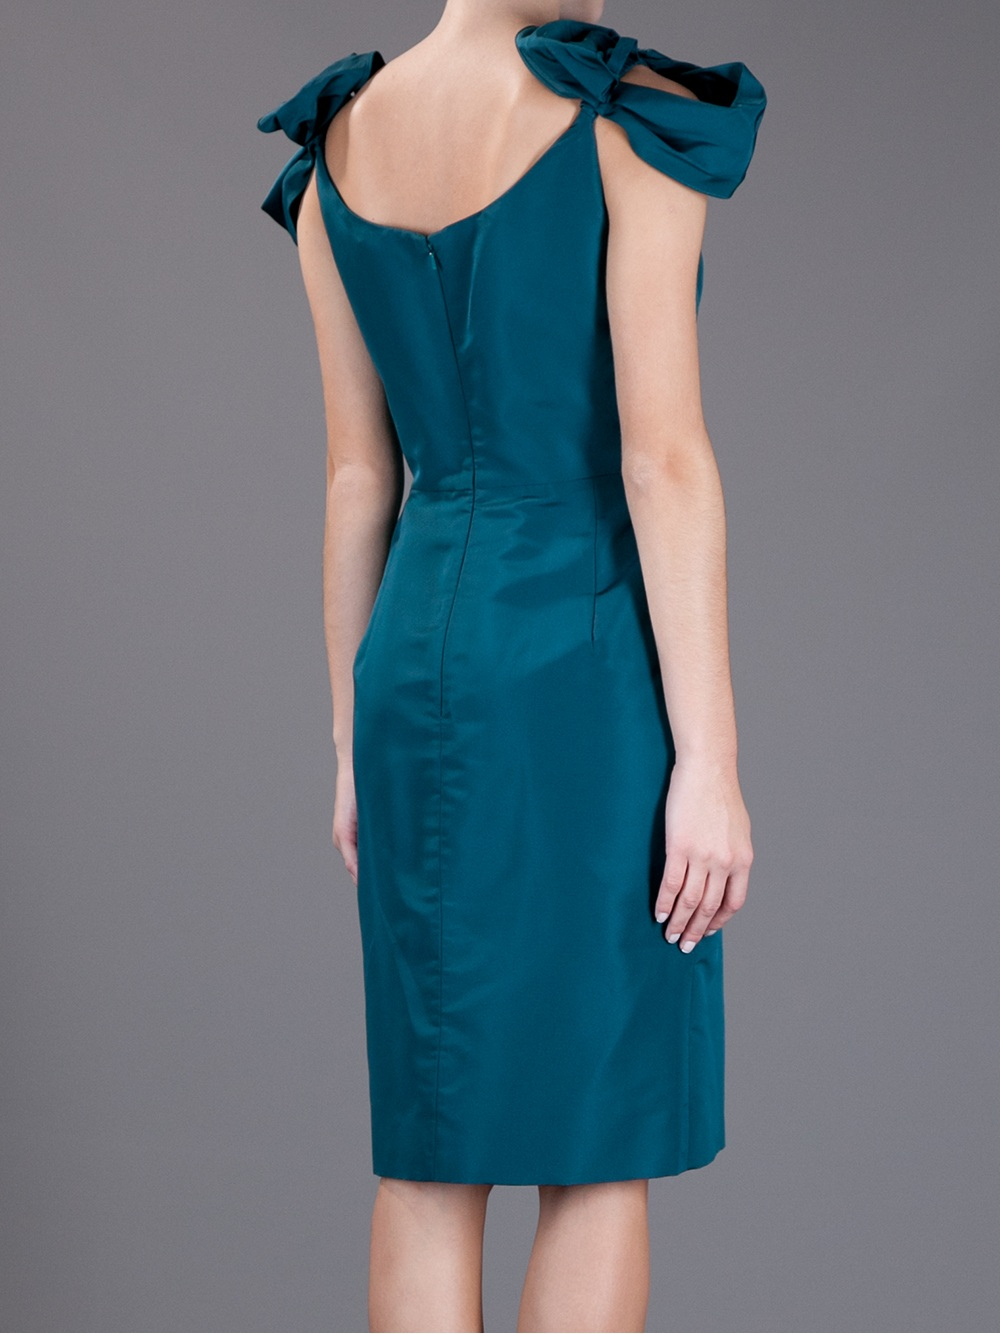 Lyst - Oscar de la renta Silk Dress in Blue